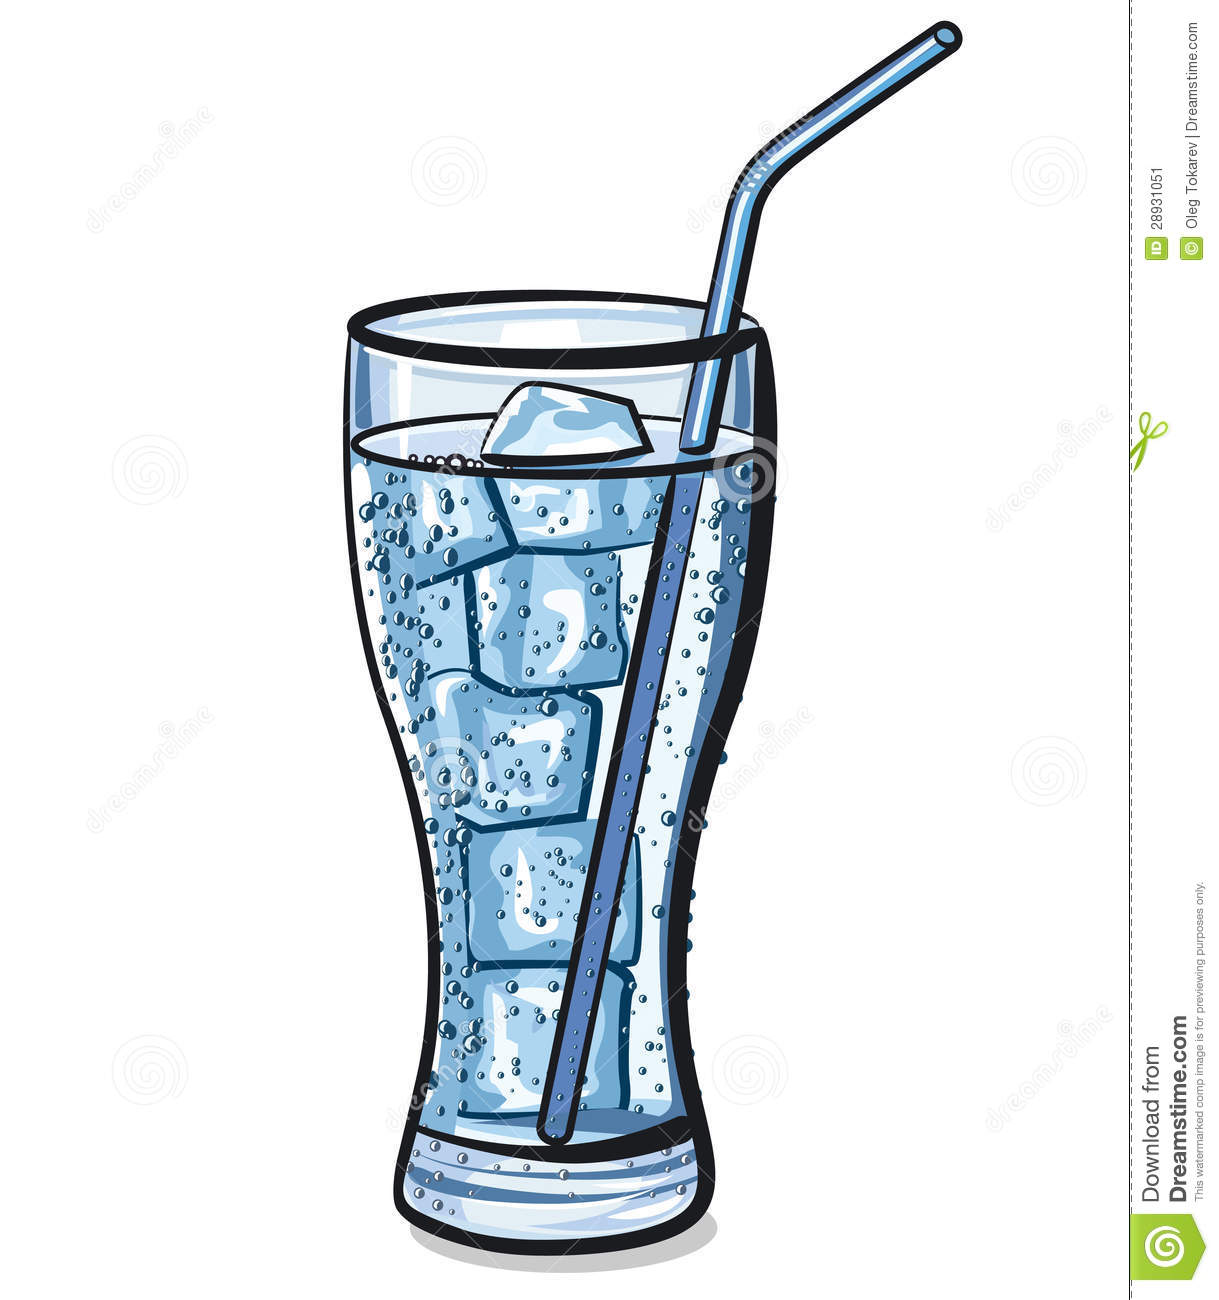 glass of water clipart - Glass Of Water Clip Art